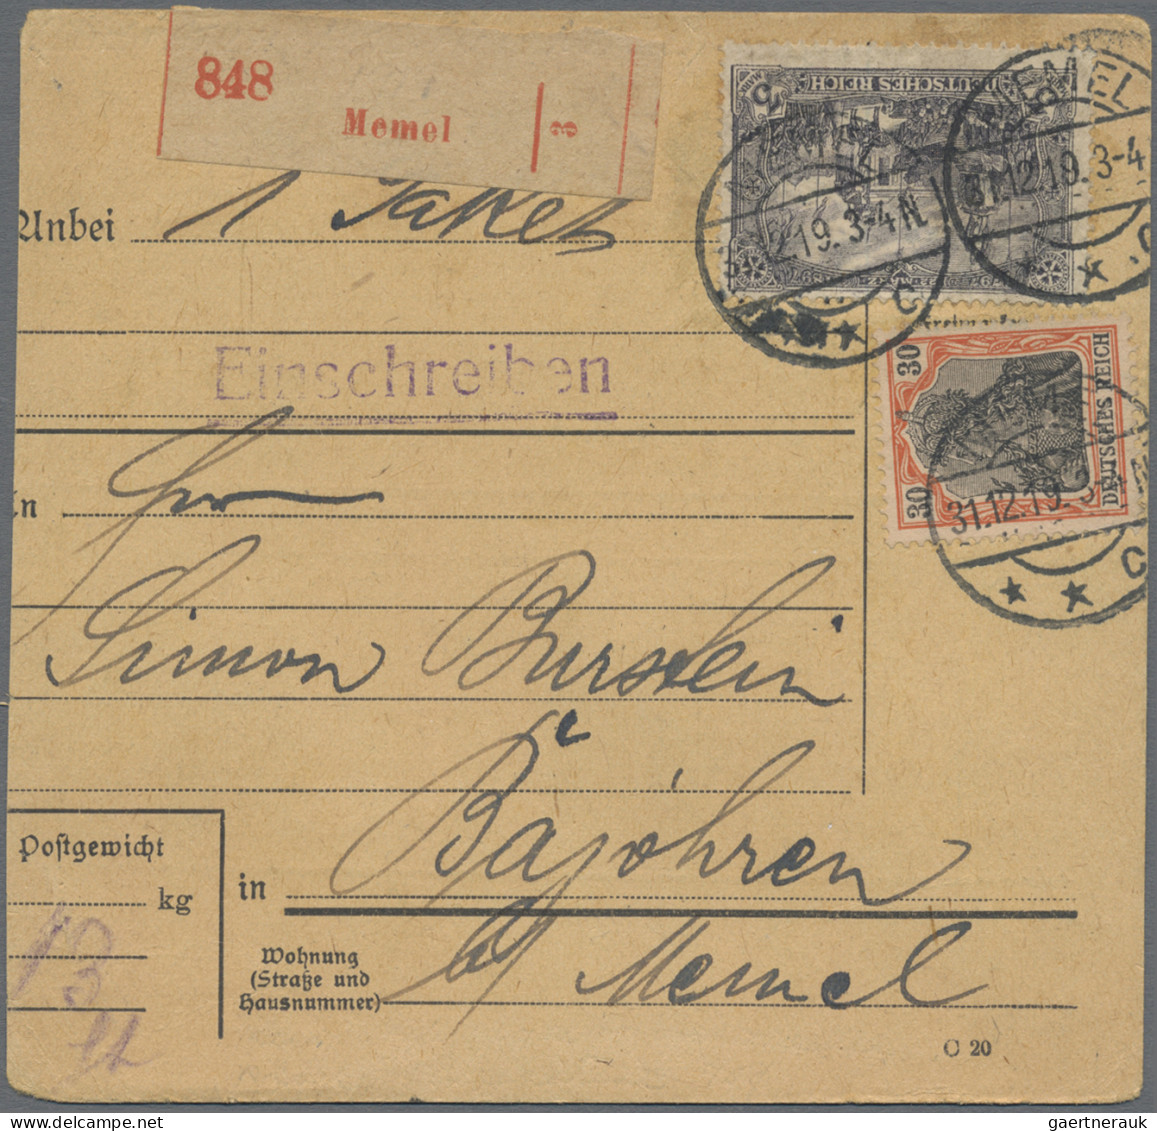 Deutsches Reich - Nebengebiete: 1900/1918 (ca.), Partie von ca. 154 Belegen, dab